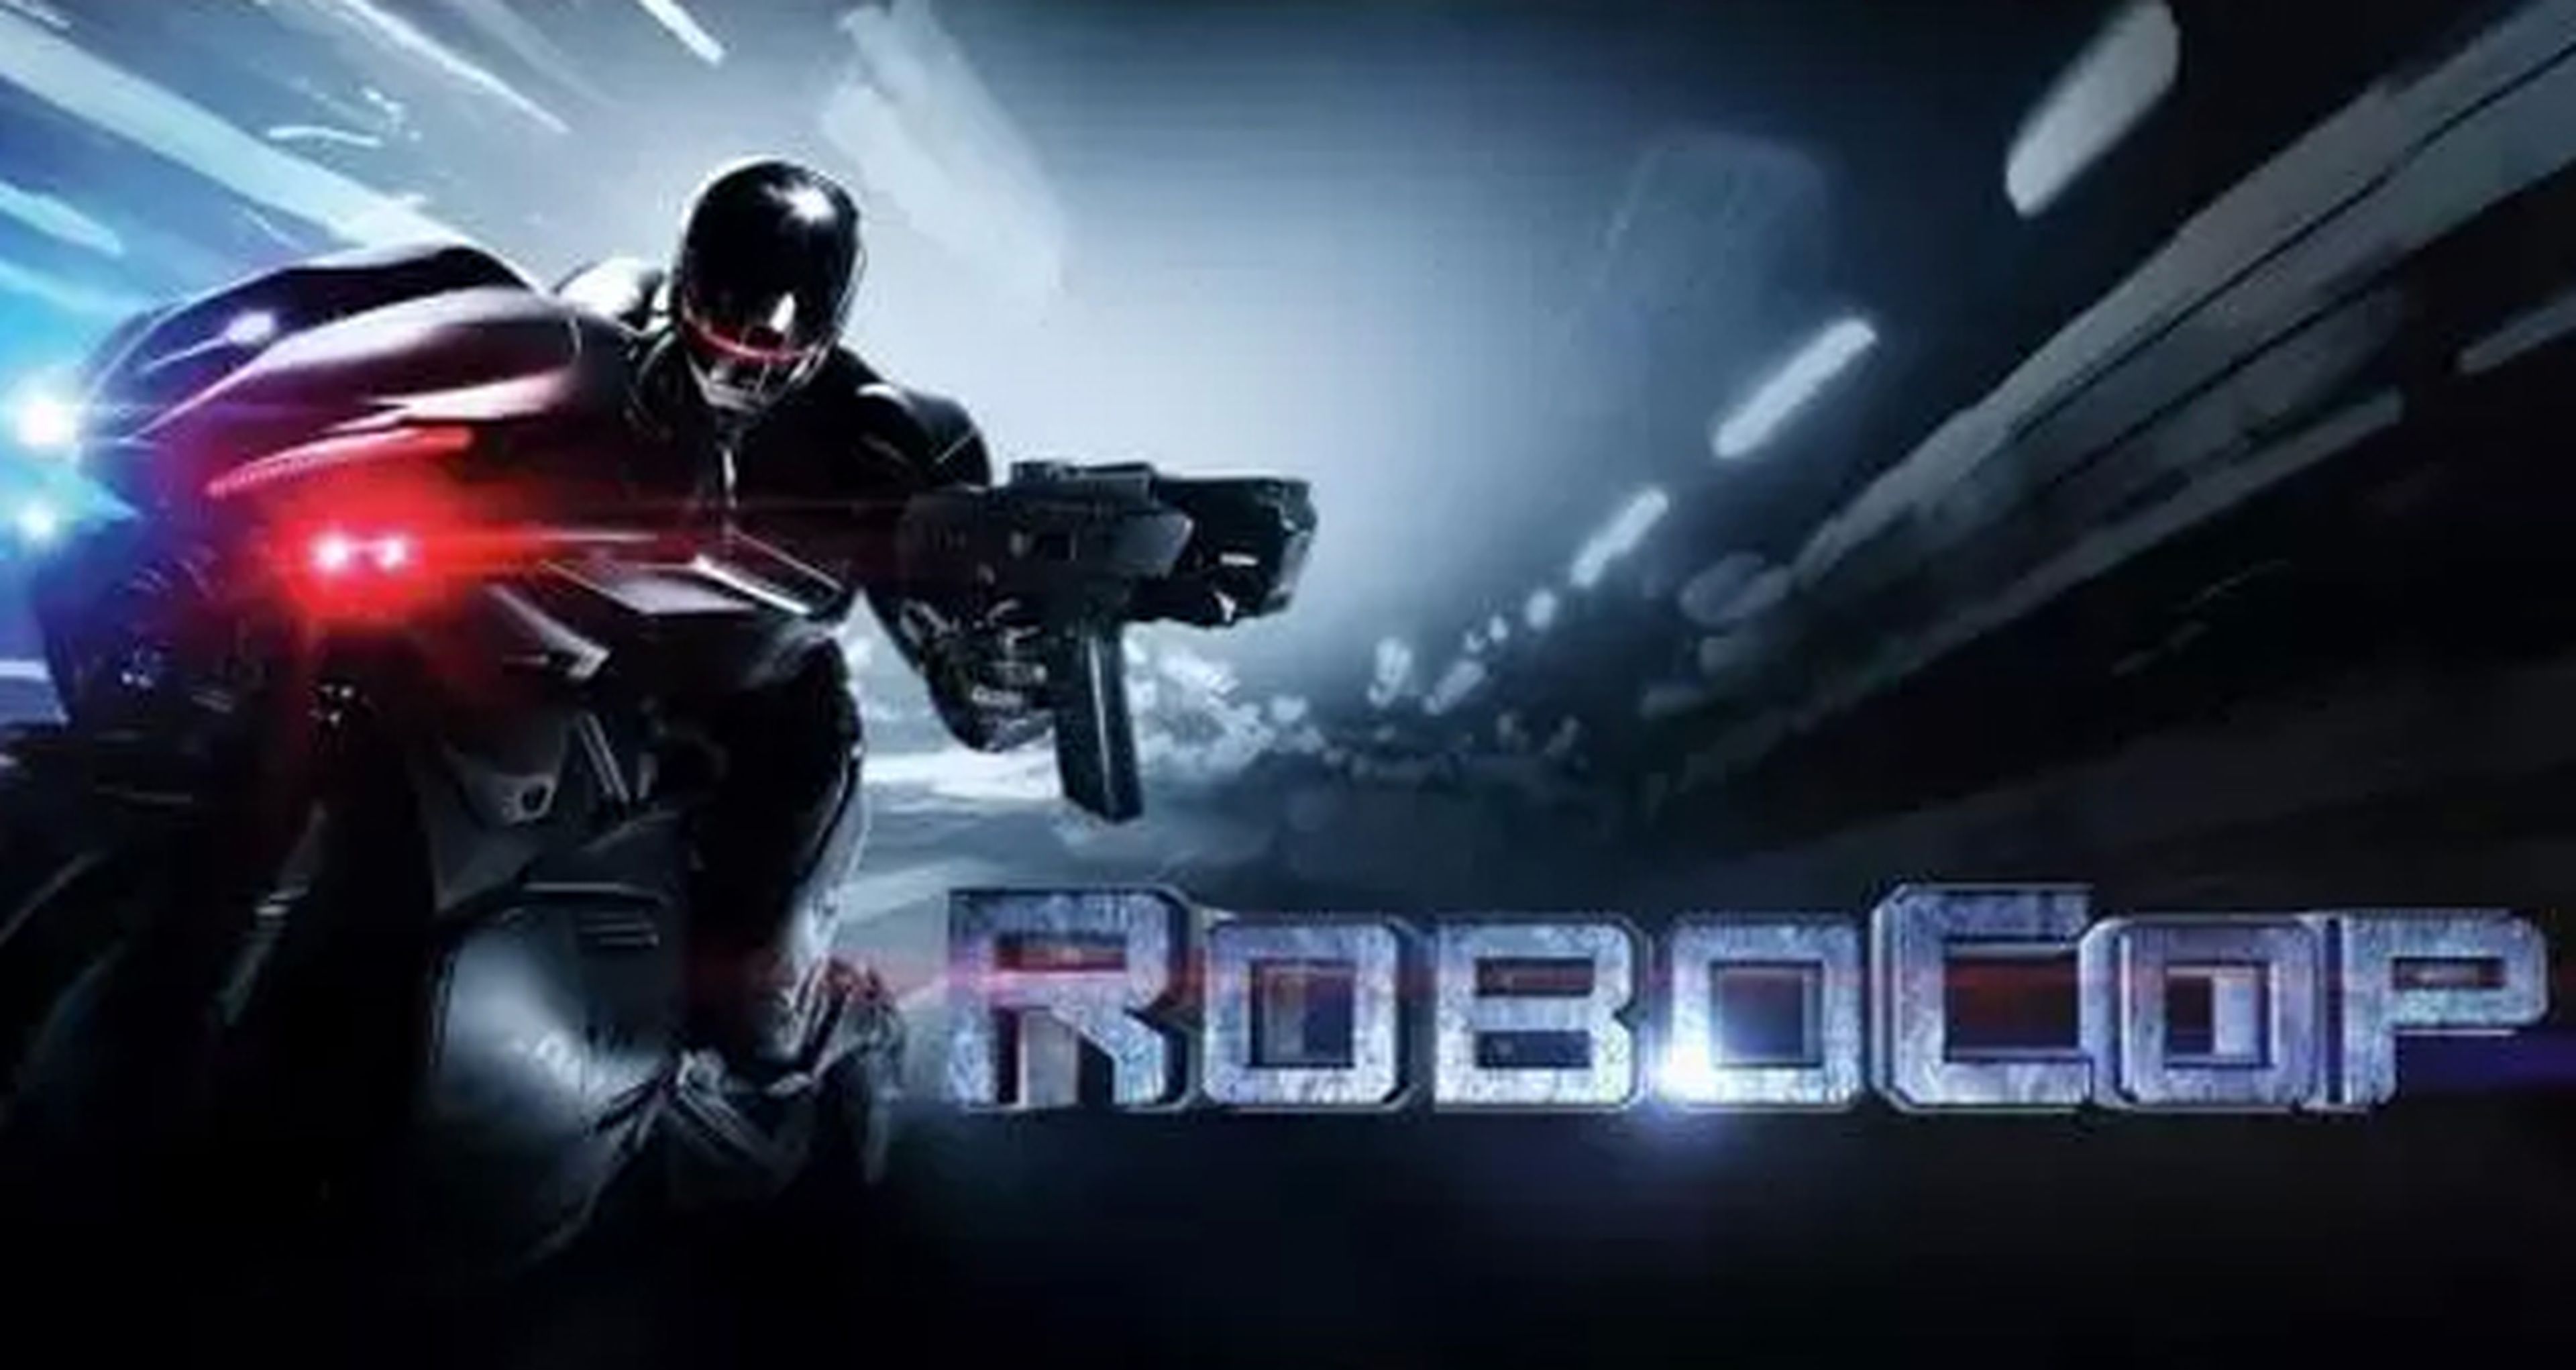 Nuevo banner de RoboCop, esta vez en moto